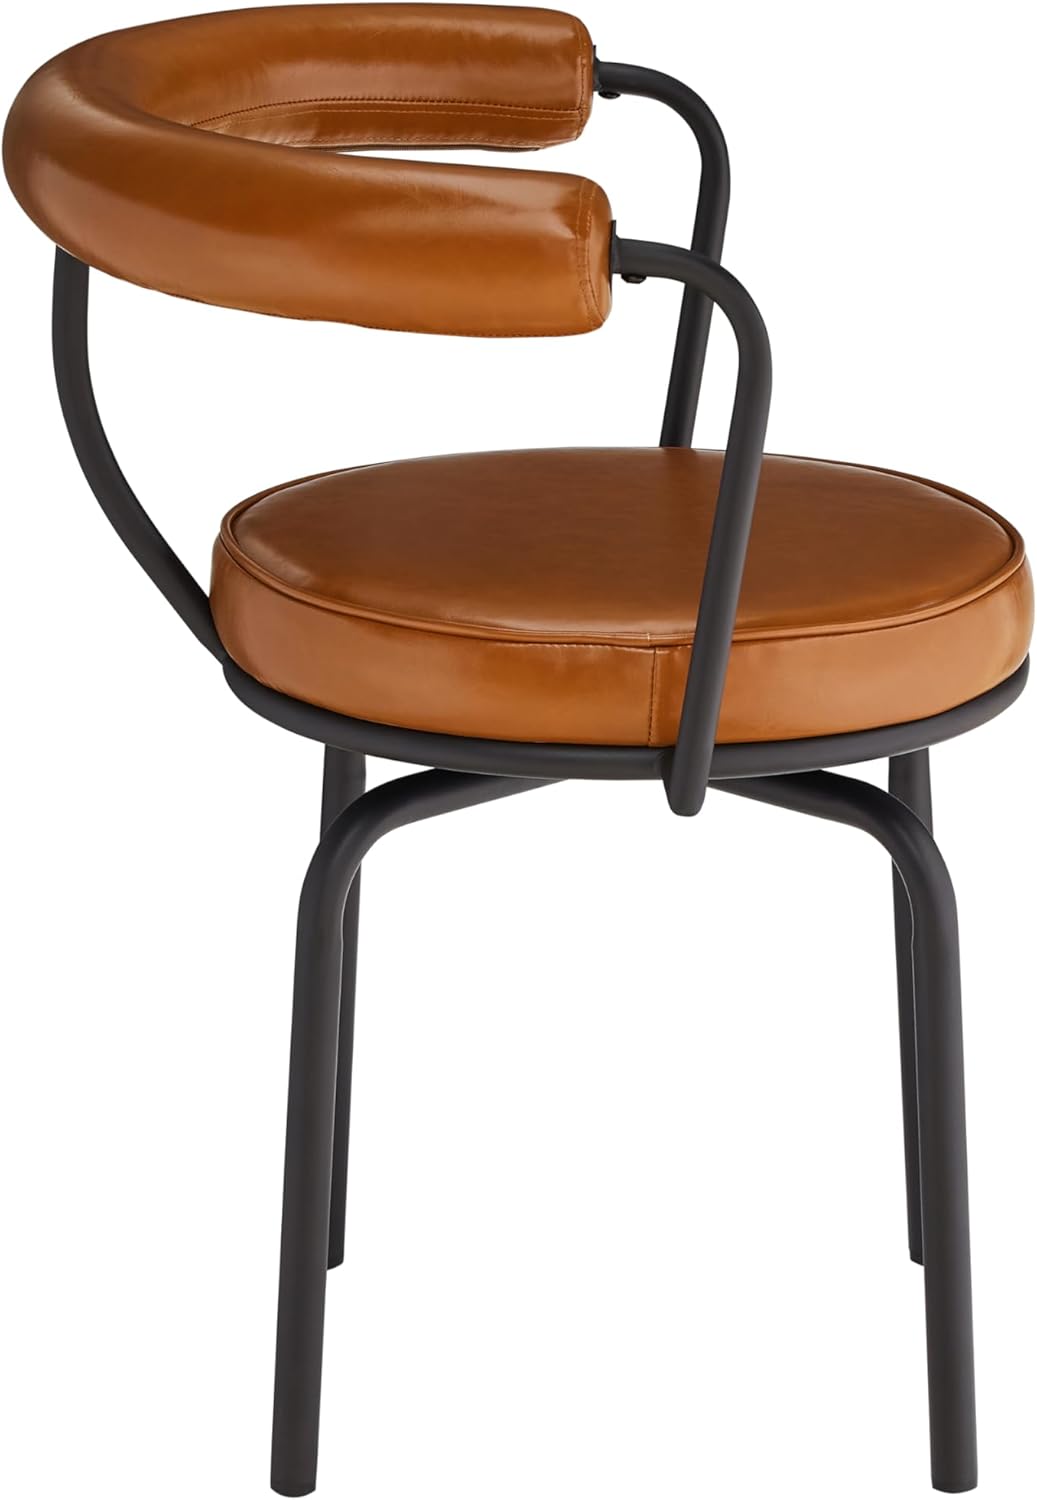 Silla de comedor, moderna silla giratoria decorativa, sillón tapizado de piel